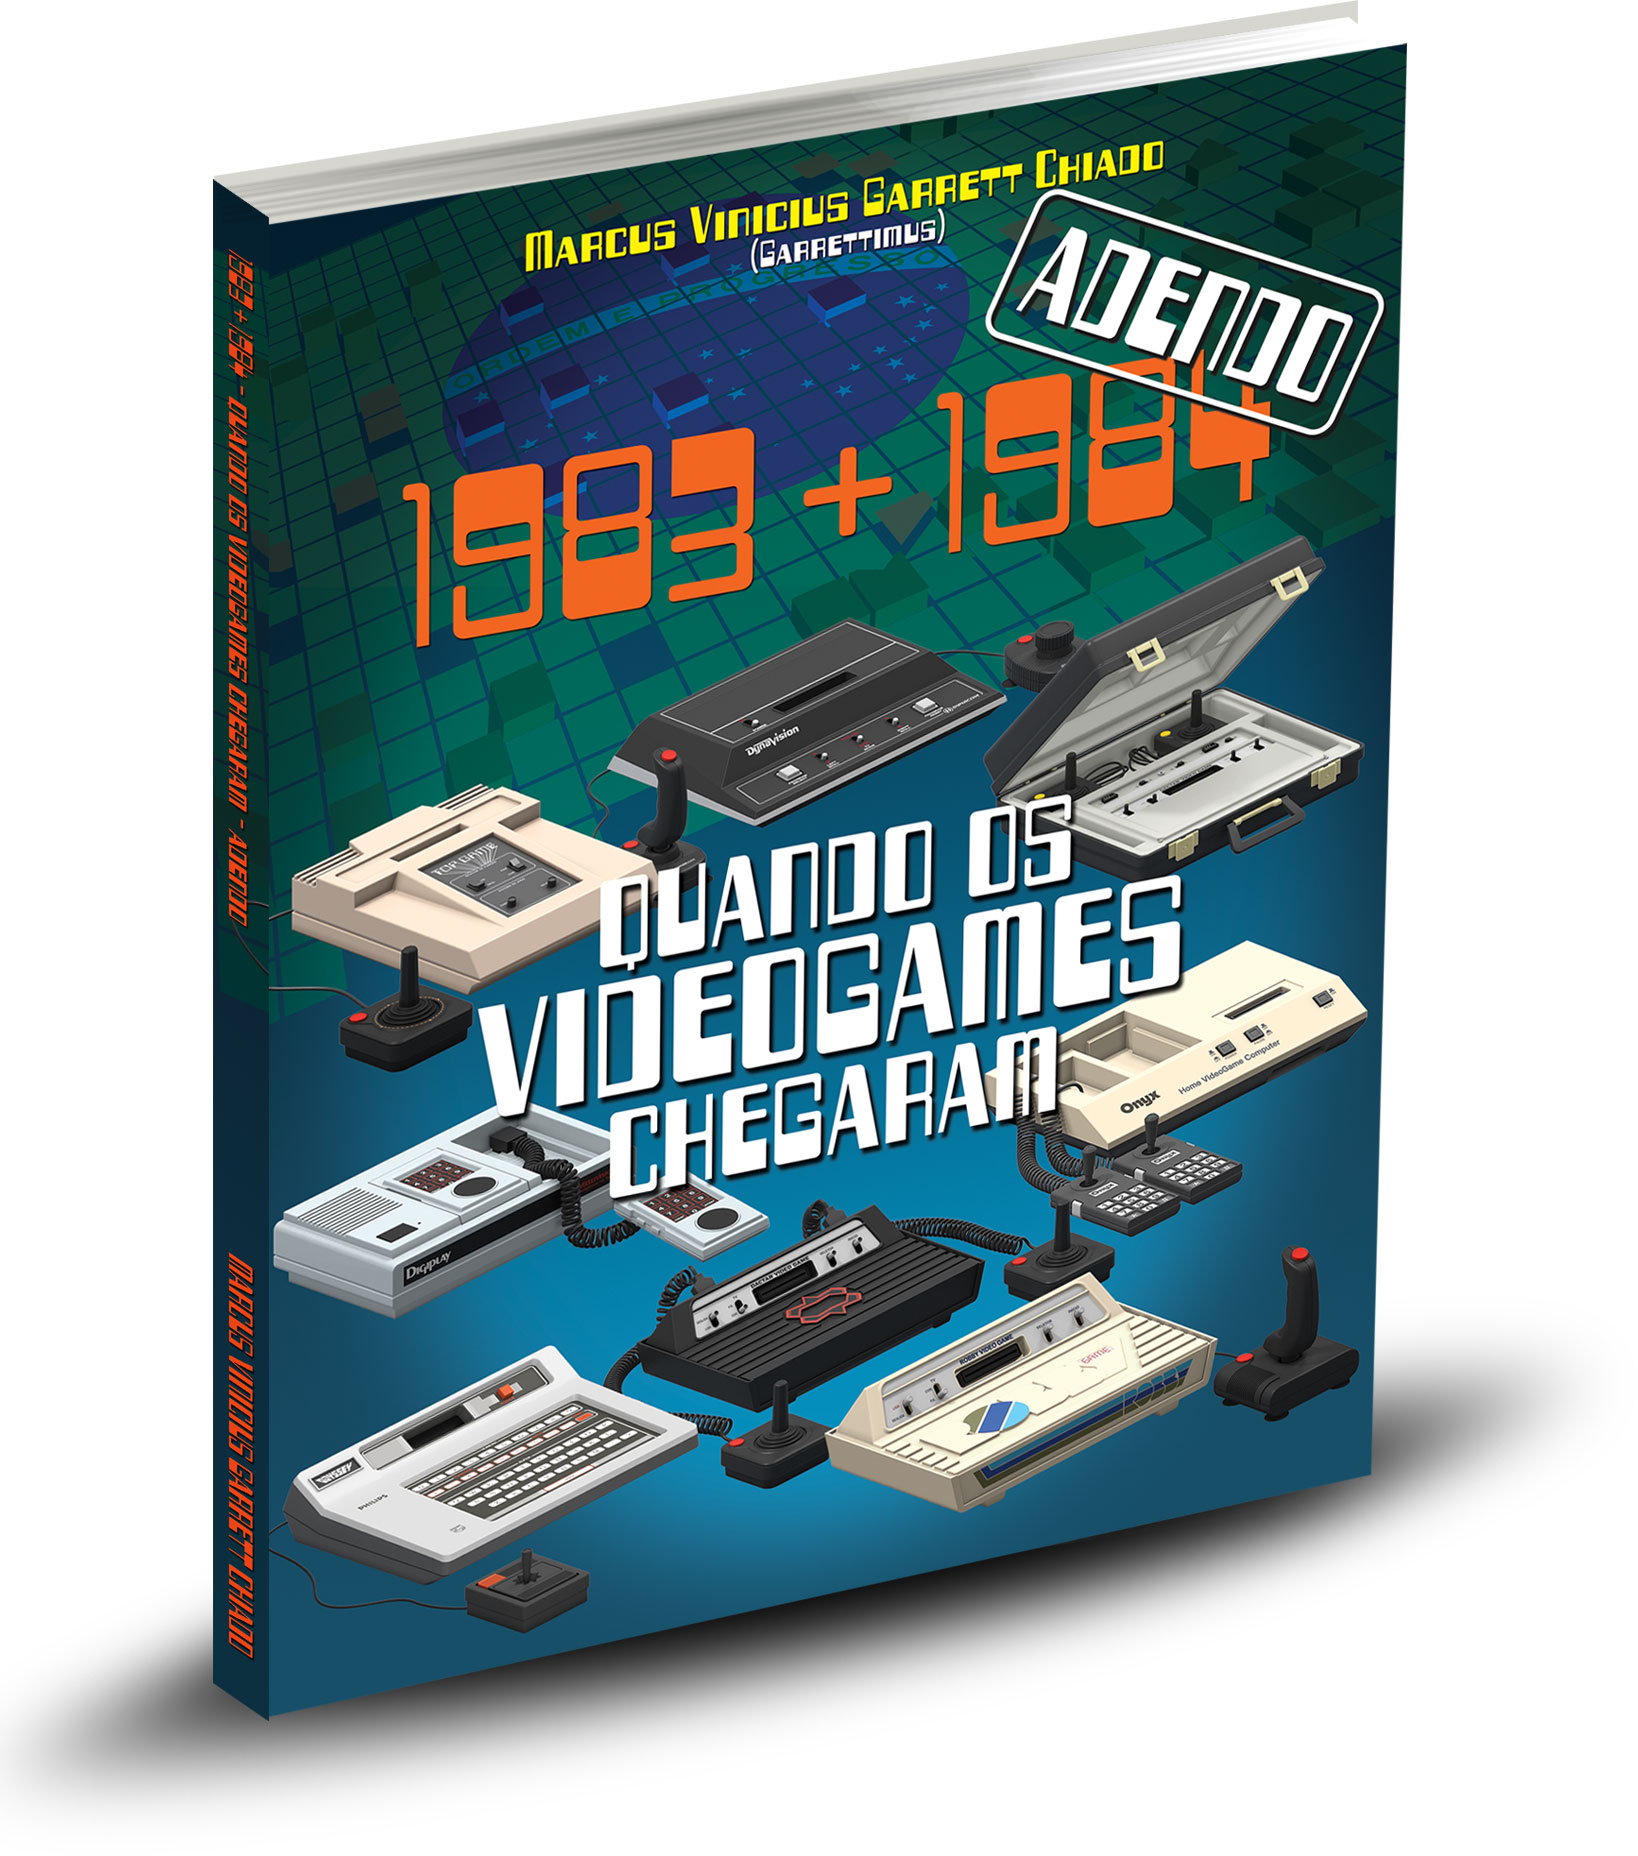 1983+1984: livro sobre chegada dos videogames ao Brasil ganha adendo | Revista Clube MSX